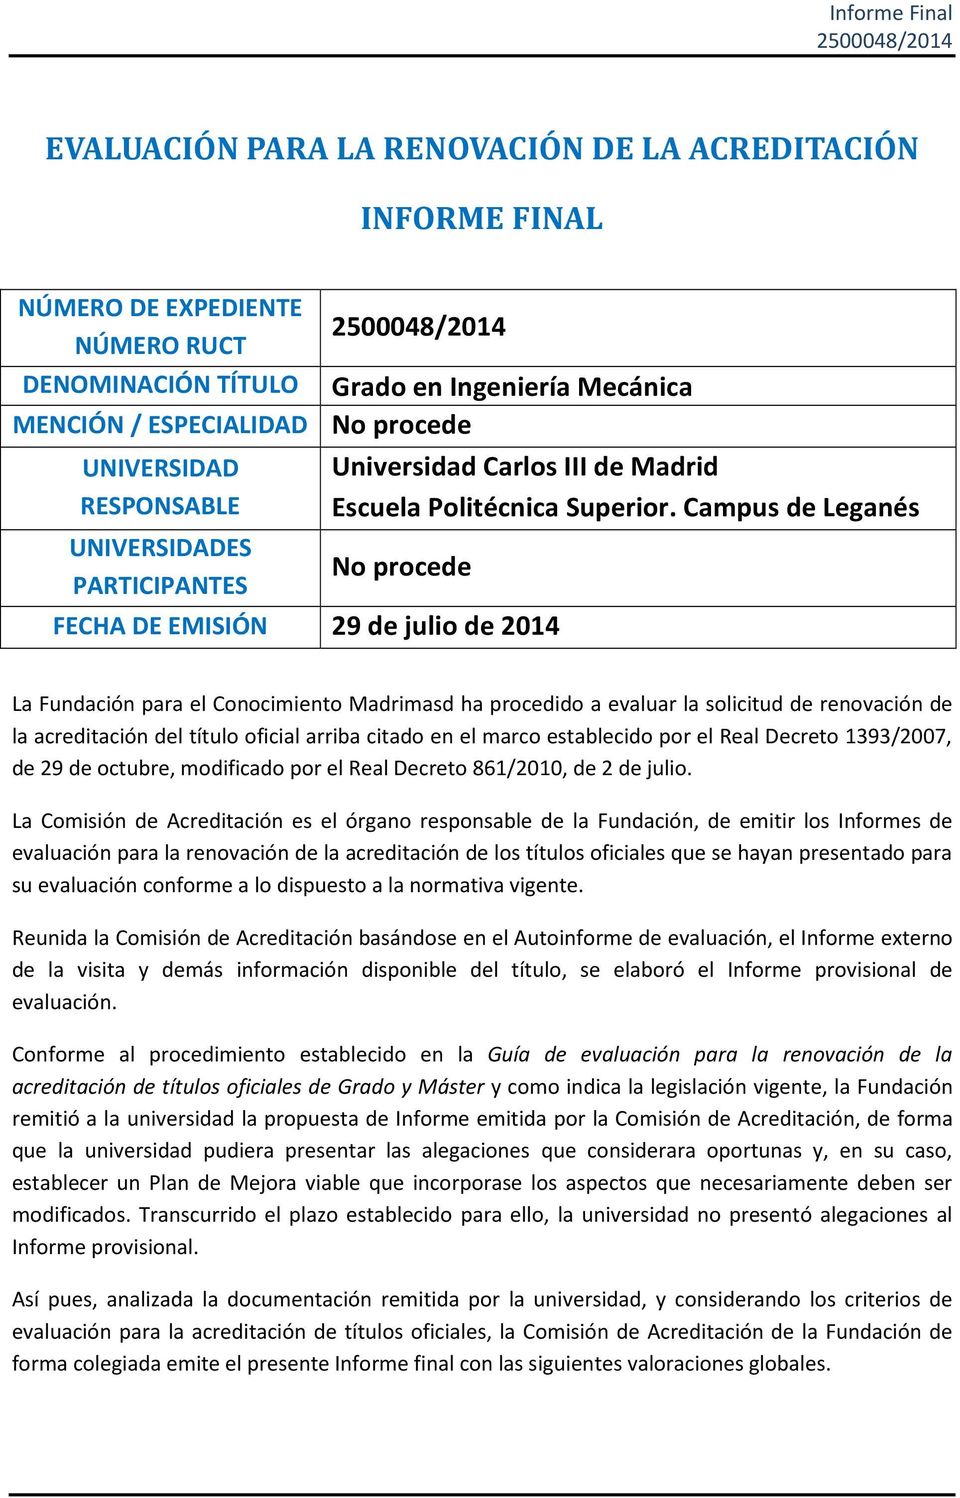 Campus de Leganés No procede FECHA DE EMISIÓN 29 de julio de 2014 La Fundación para el Conocimiento Madrimasd ha procedido a evaluar la solicitud de renovación de la acreditación del título oficial